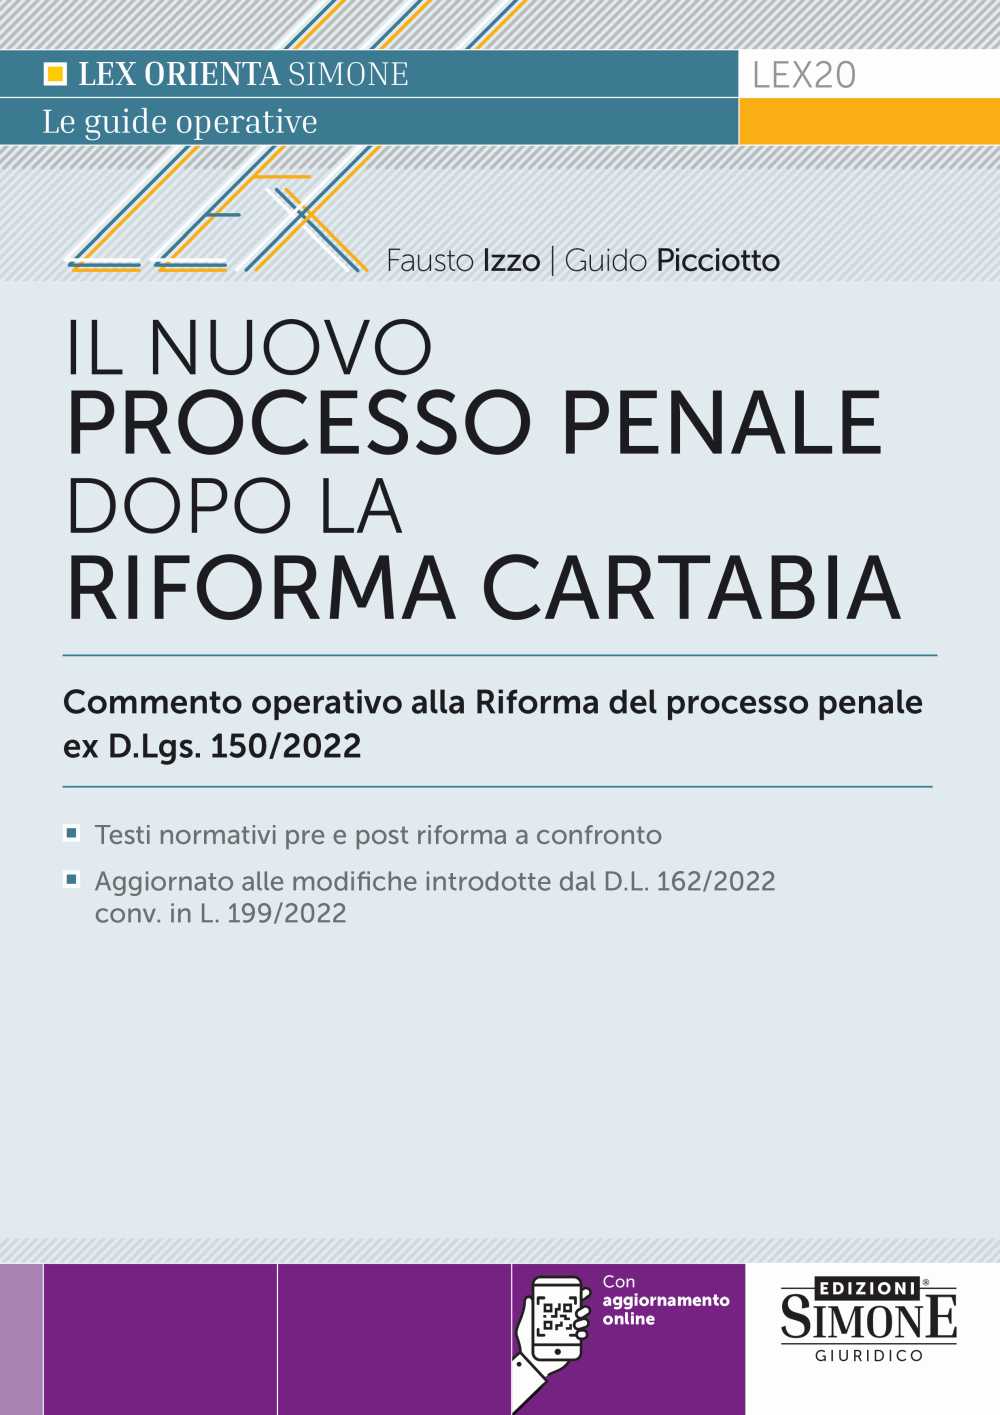 Il Nuovo Processo Penale dopo la Riforma Cartabia - LEX20